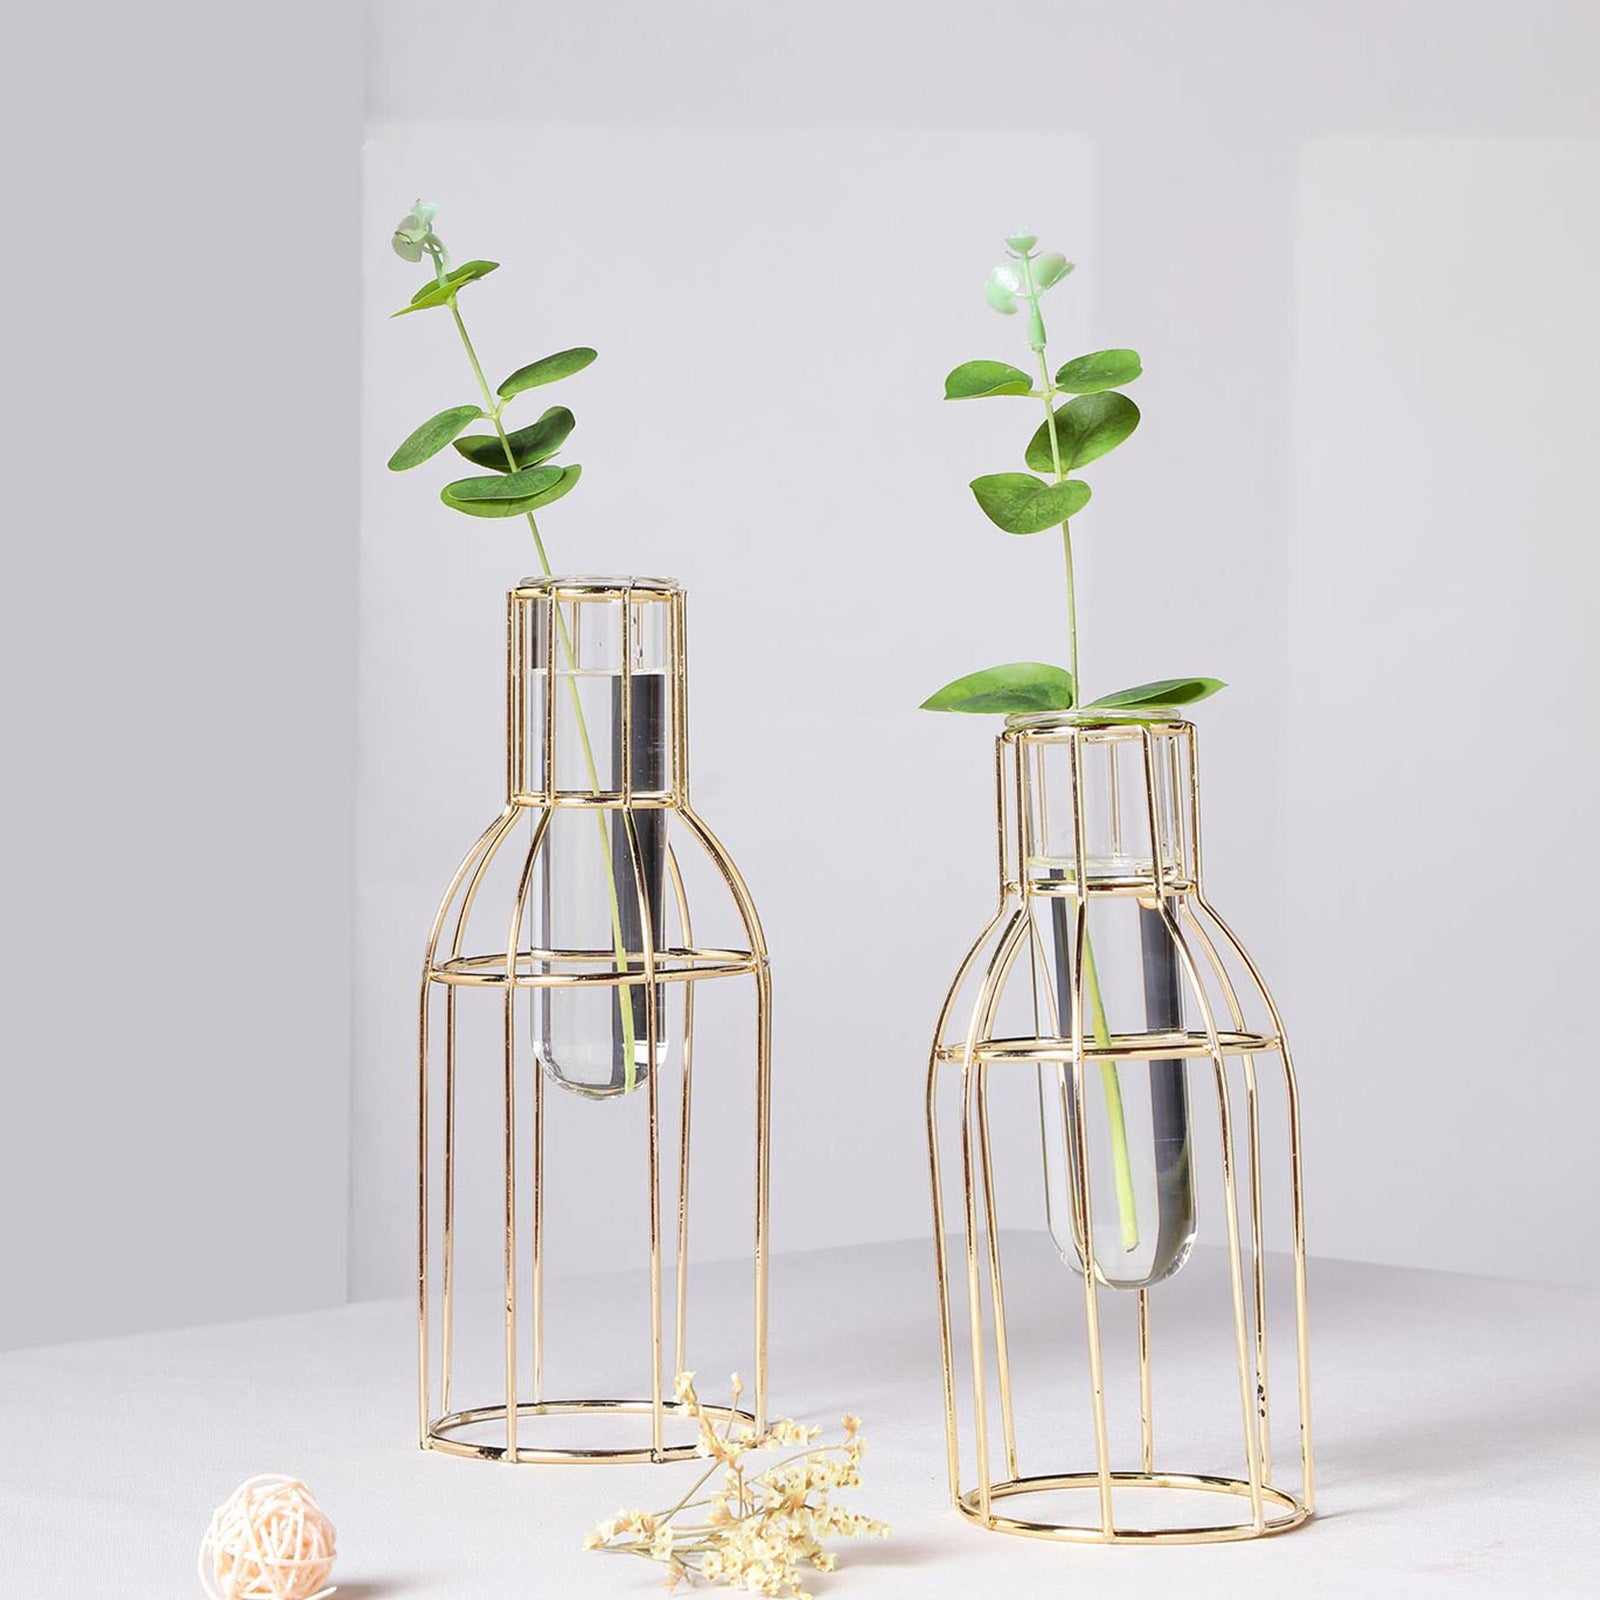 HJN Staggered Vase Desktop Flower Vase，Glass Flower Vases Test Tube with  Gold Metal Stand for